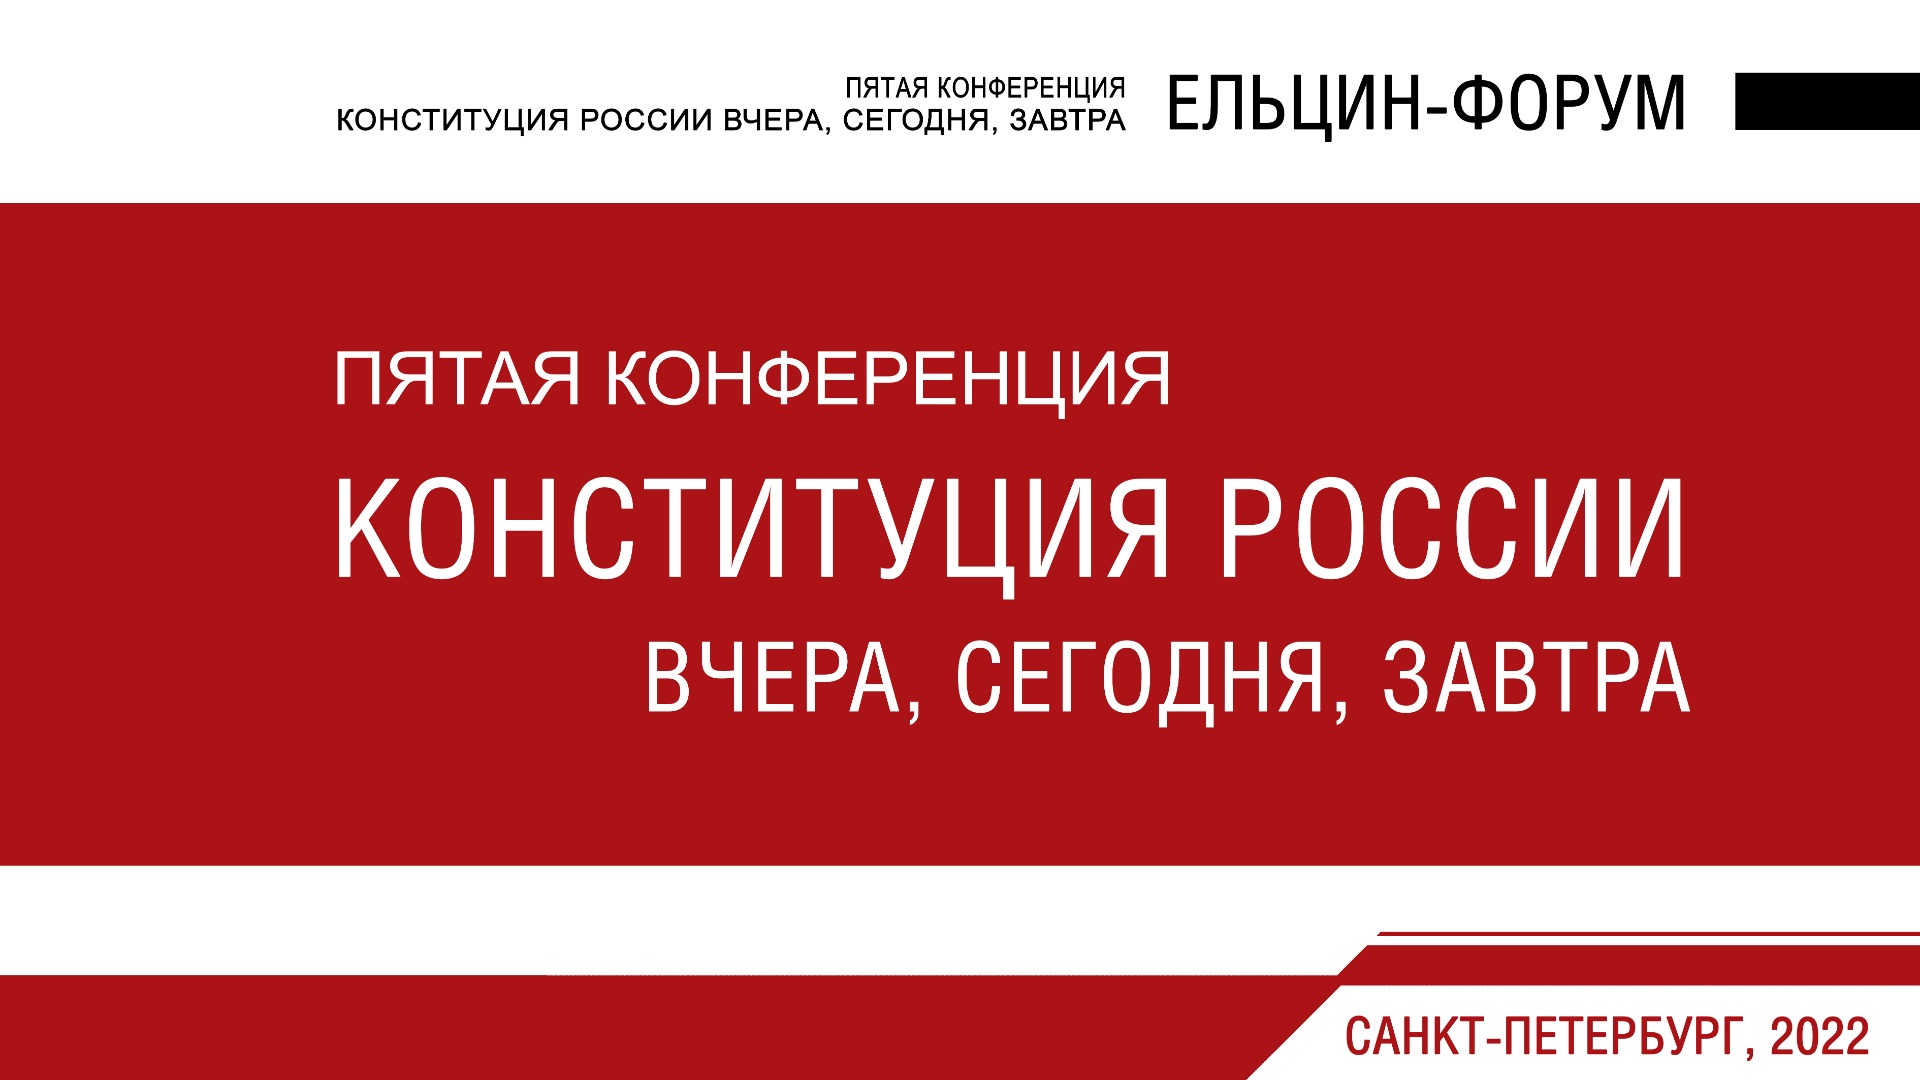 Пятая конференция «Конституция России вчера, сегодня, завтра» (Ельцин - форум)